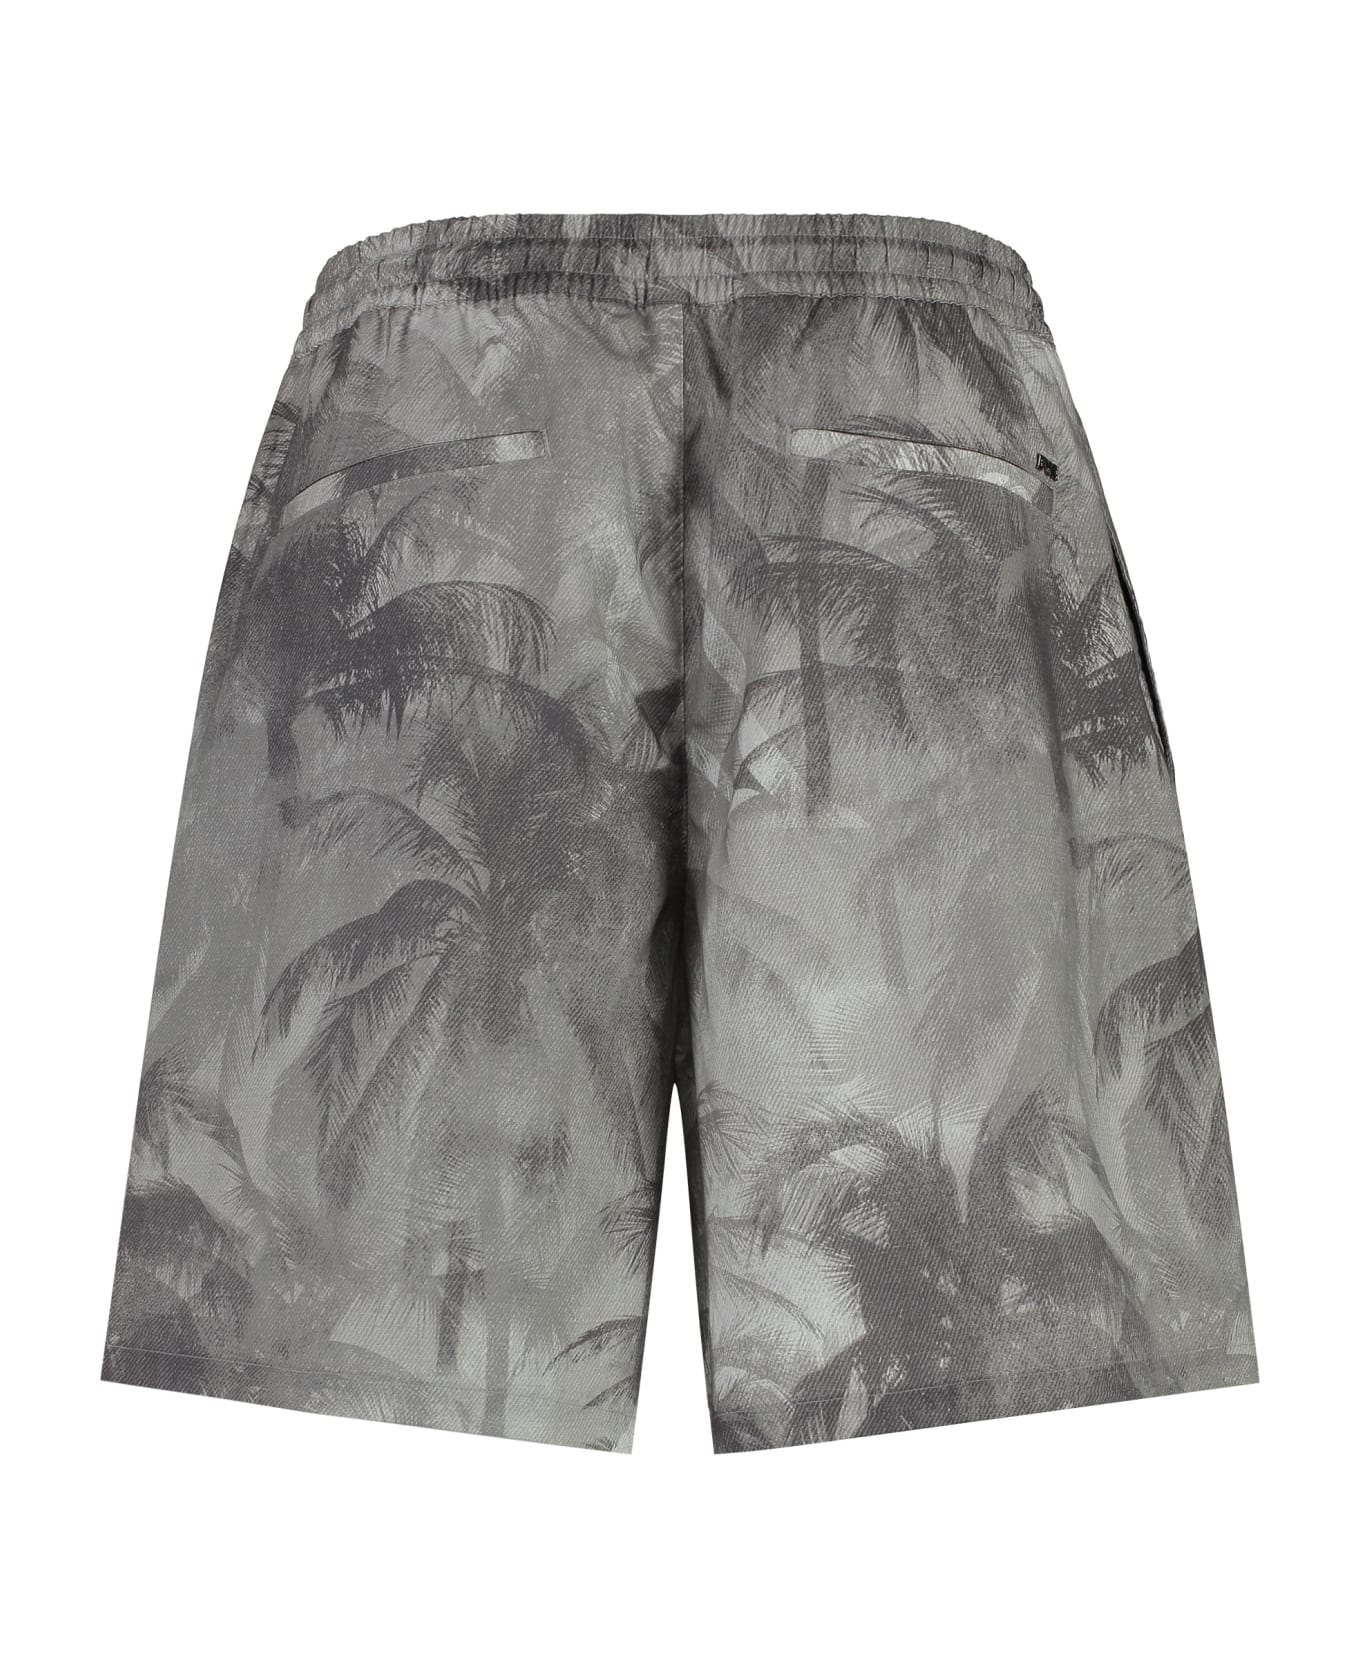 Emporio Armani Printed Cotton Bermuda Shorts - grey